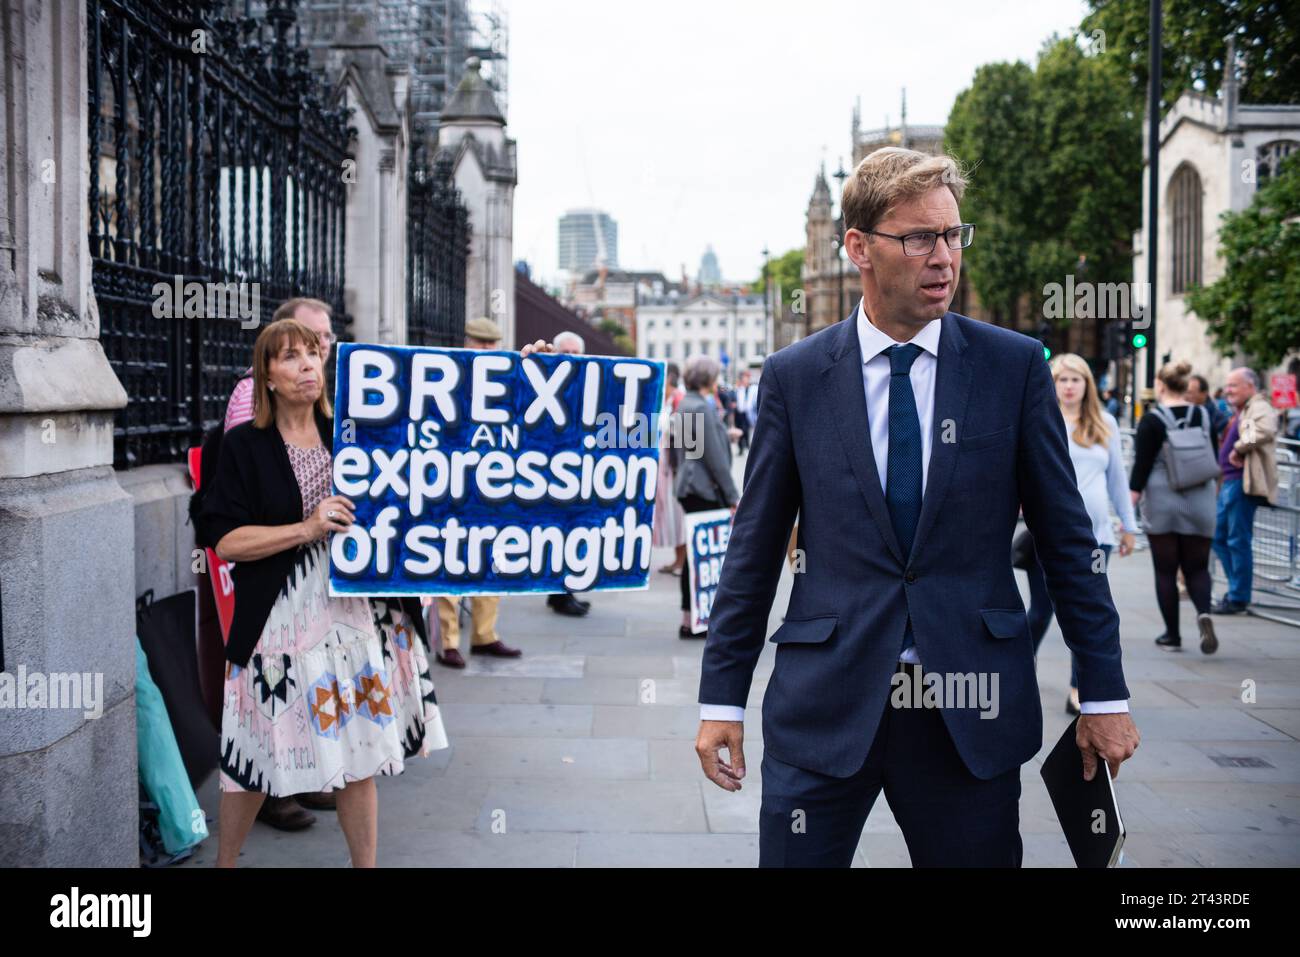 Le député Tobias Ellwood arrivant au Parlement a repris après les vacances d'été, débattant du Brexit No Deal et de la prorogation. Manifestants pro Brexit Banque D'Images